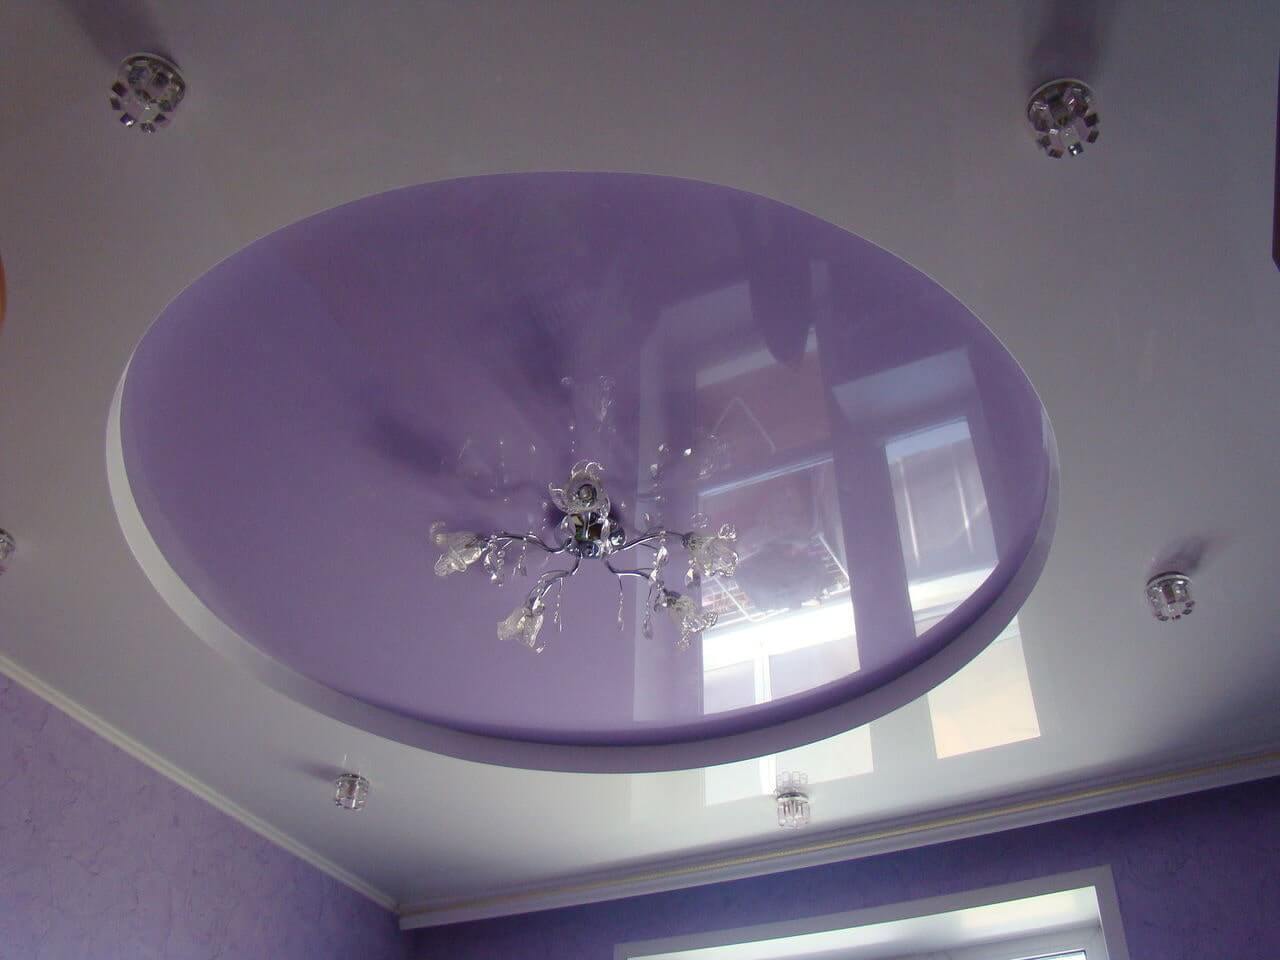 Фиолетовый натяжной потолок